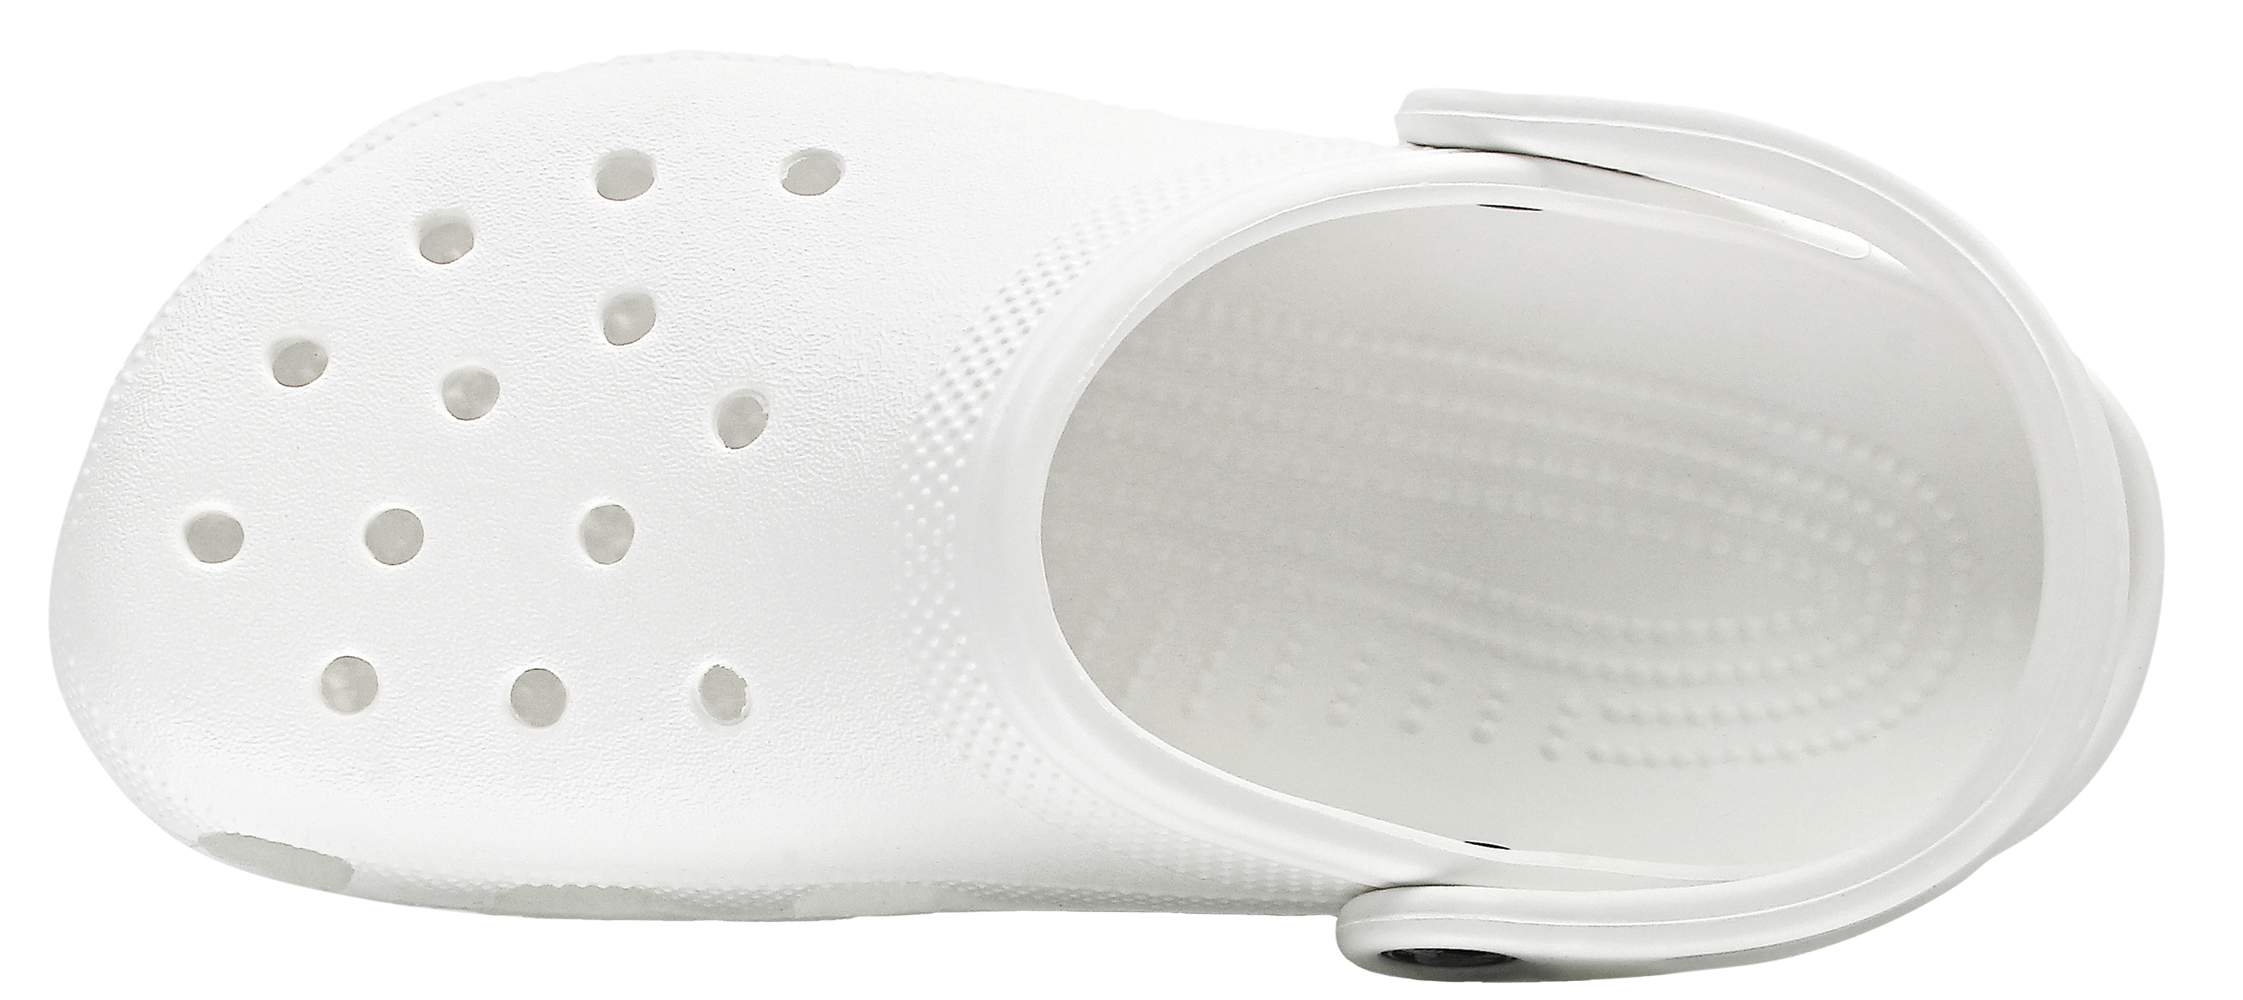 white women's crocs size 9